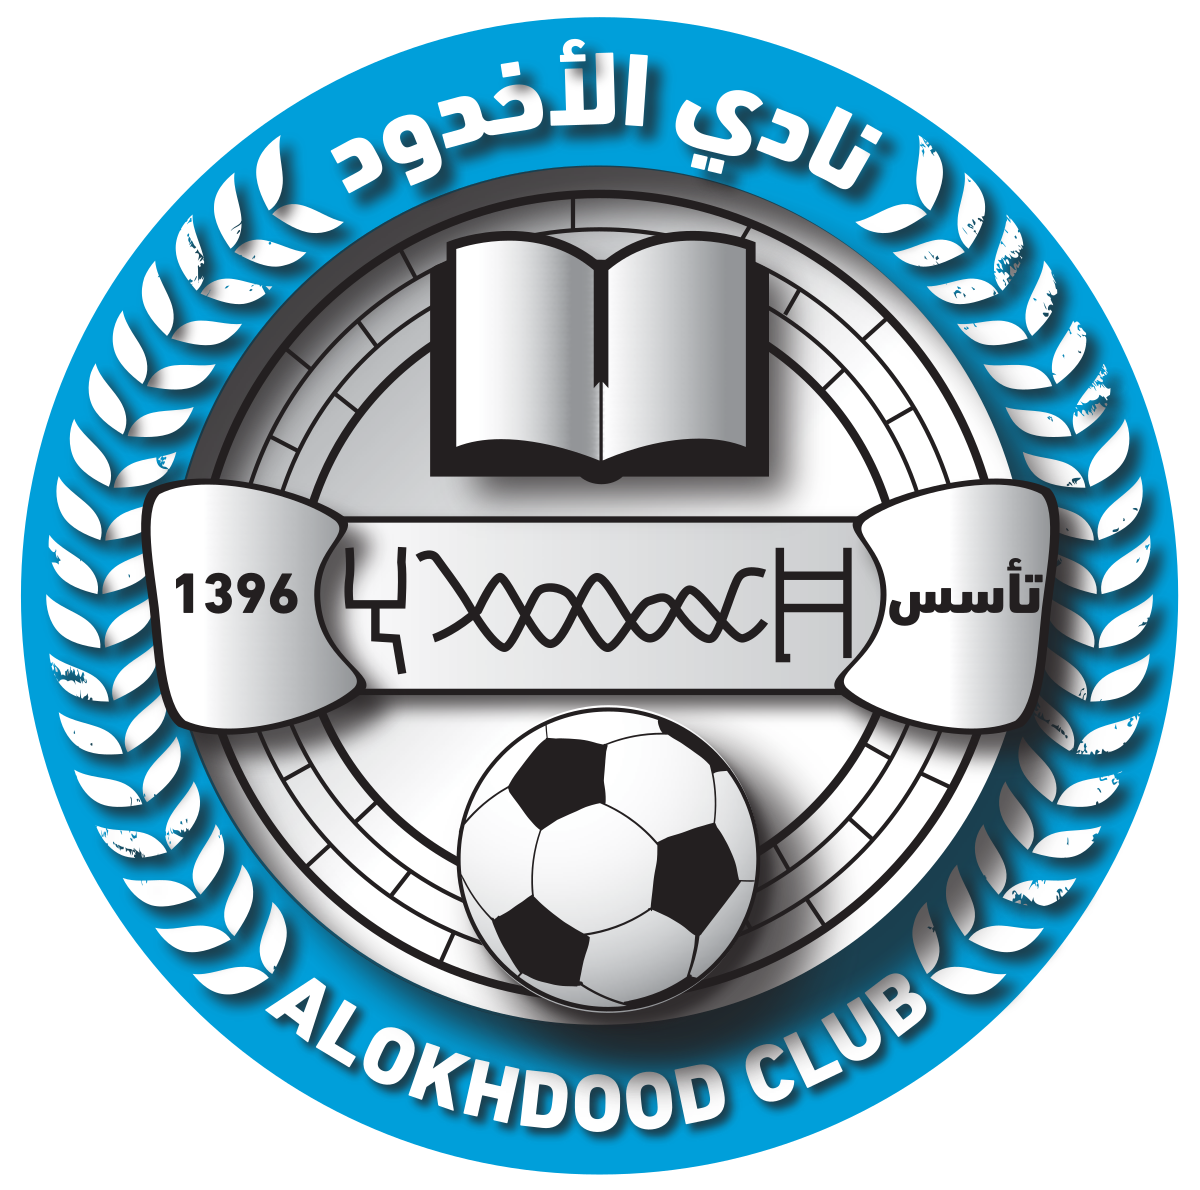 Al-Ahli Vs Alokhdood